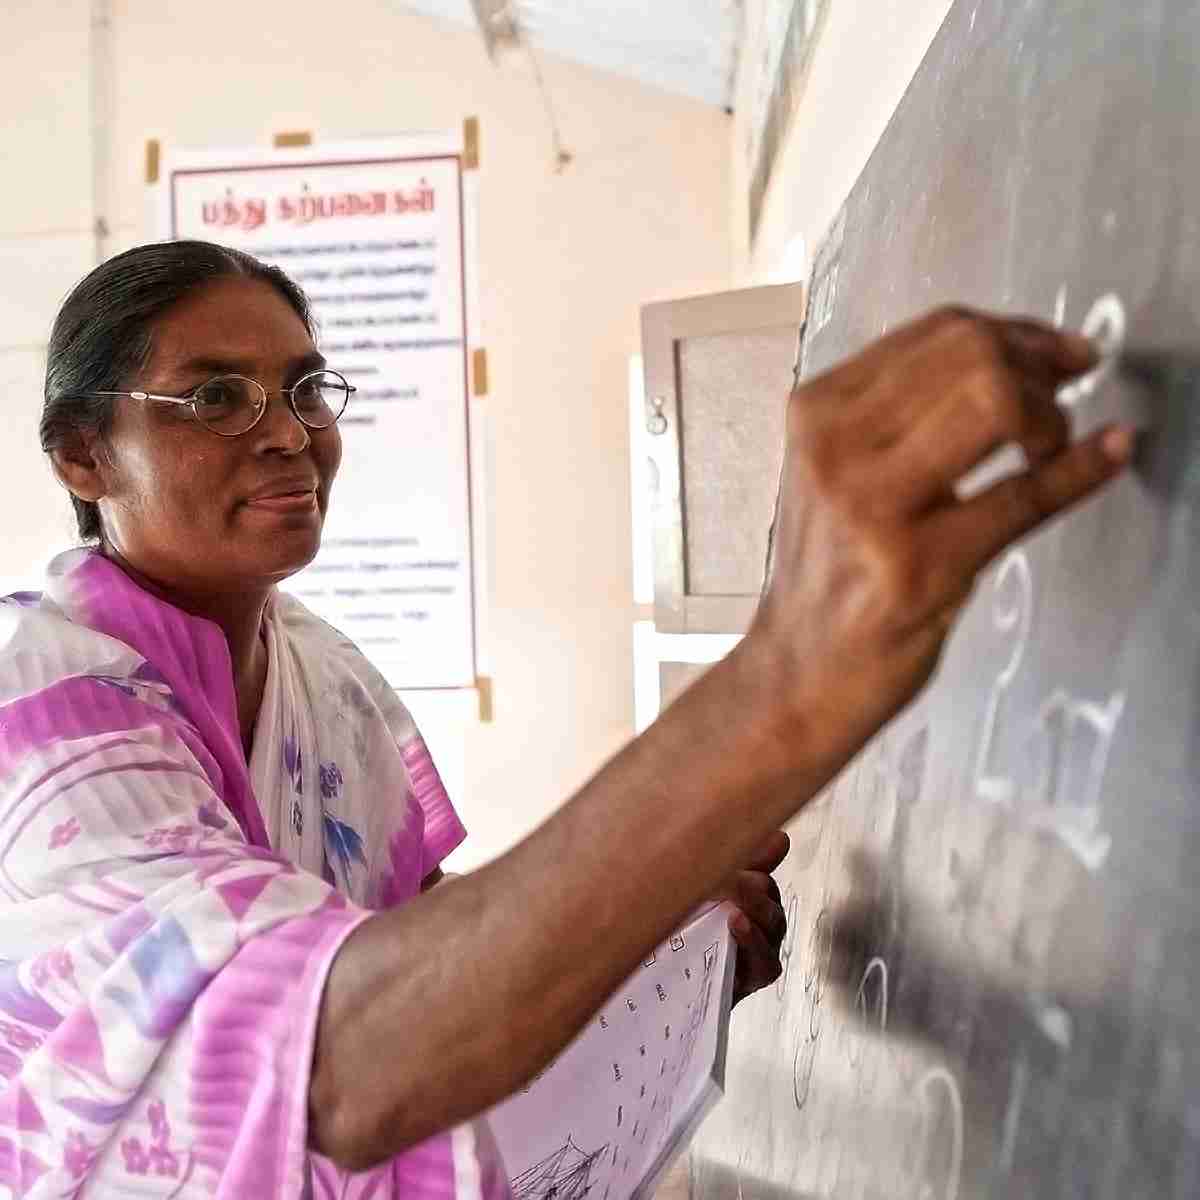 Women national worker teaches Literacy Class using chalkboard